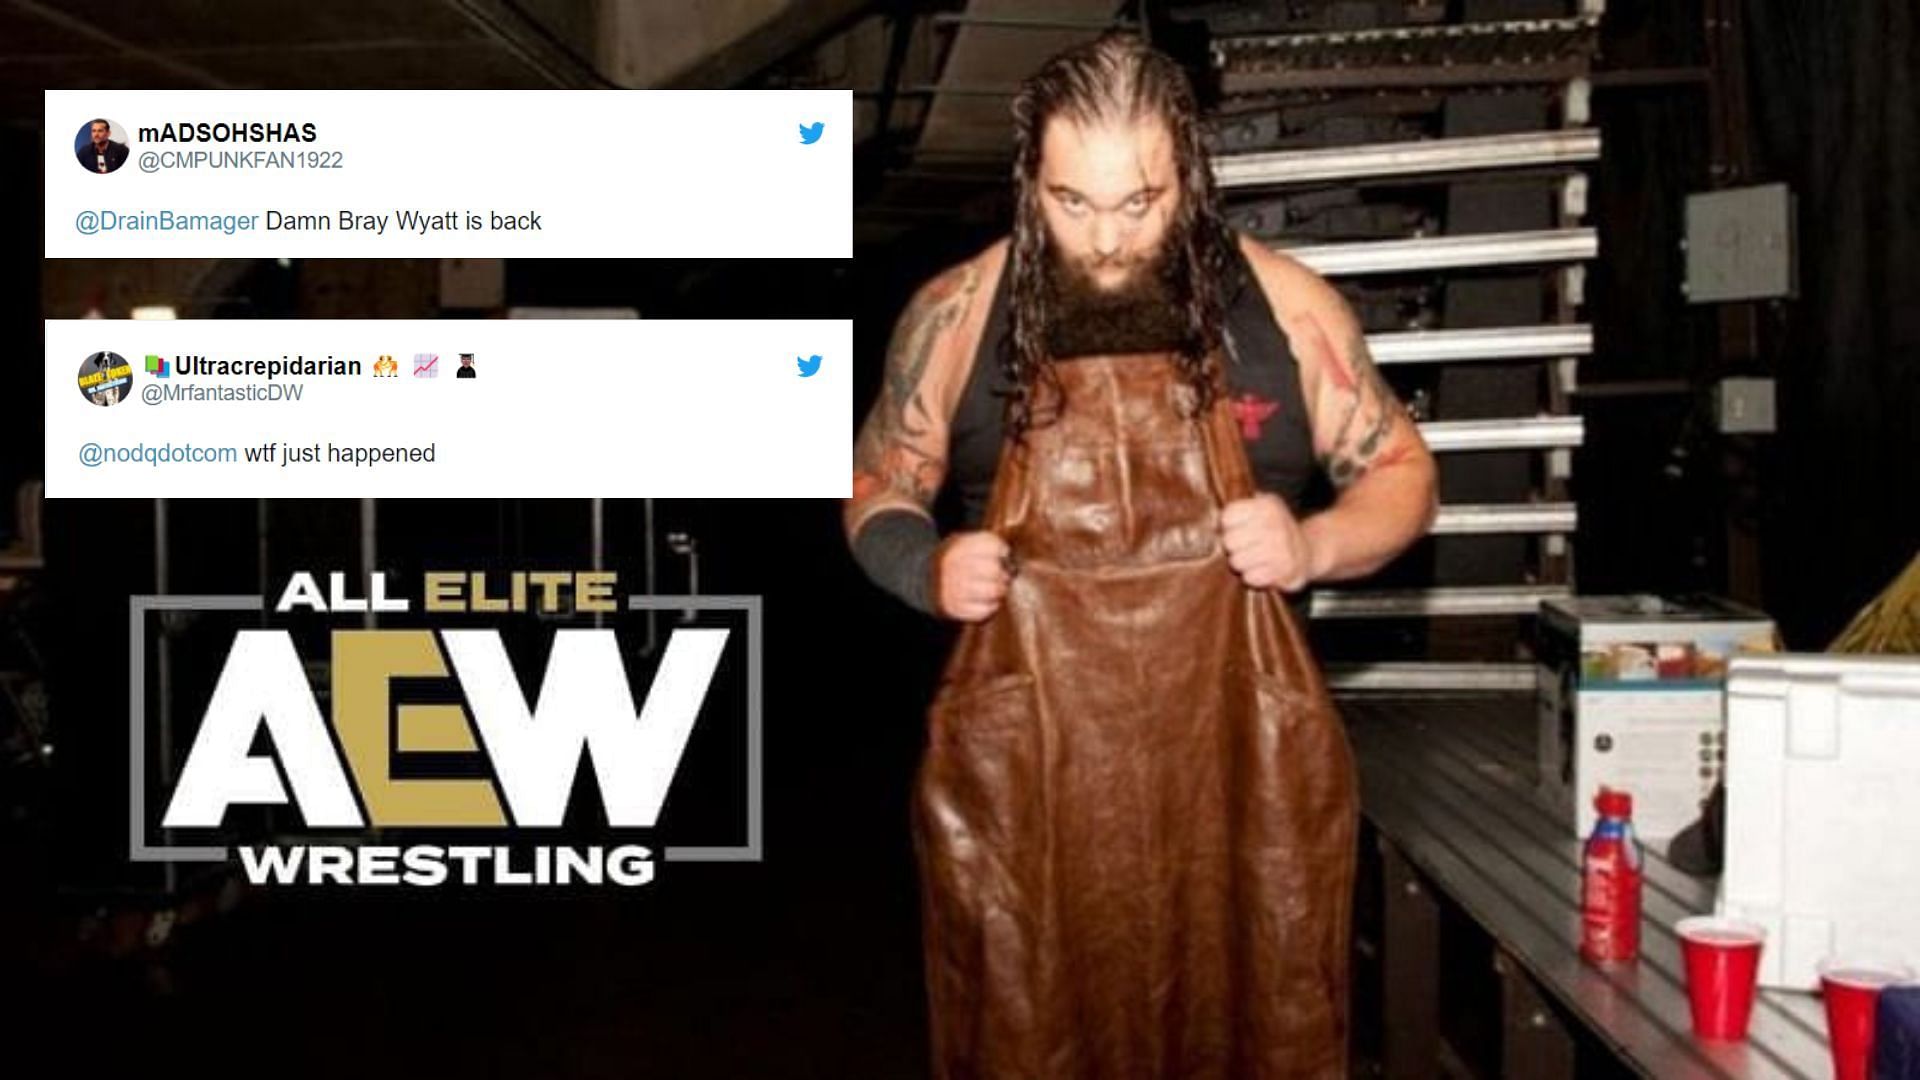 Bray Wyatt is a former WWE Champion